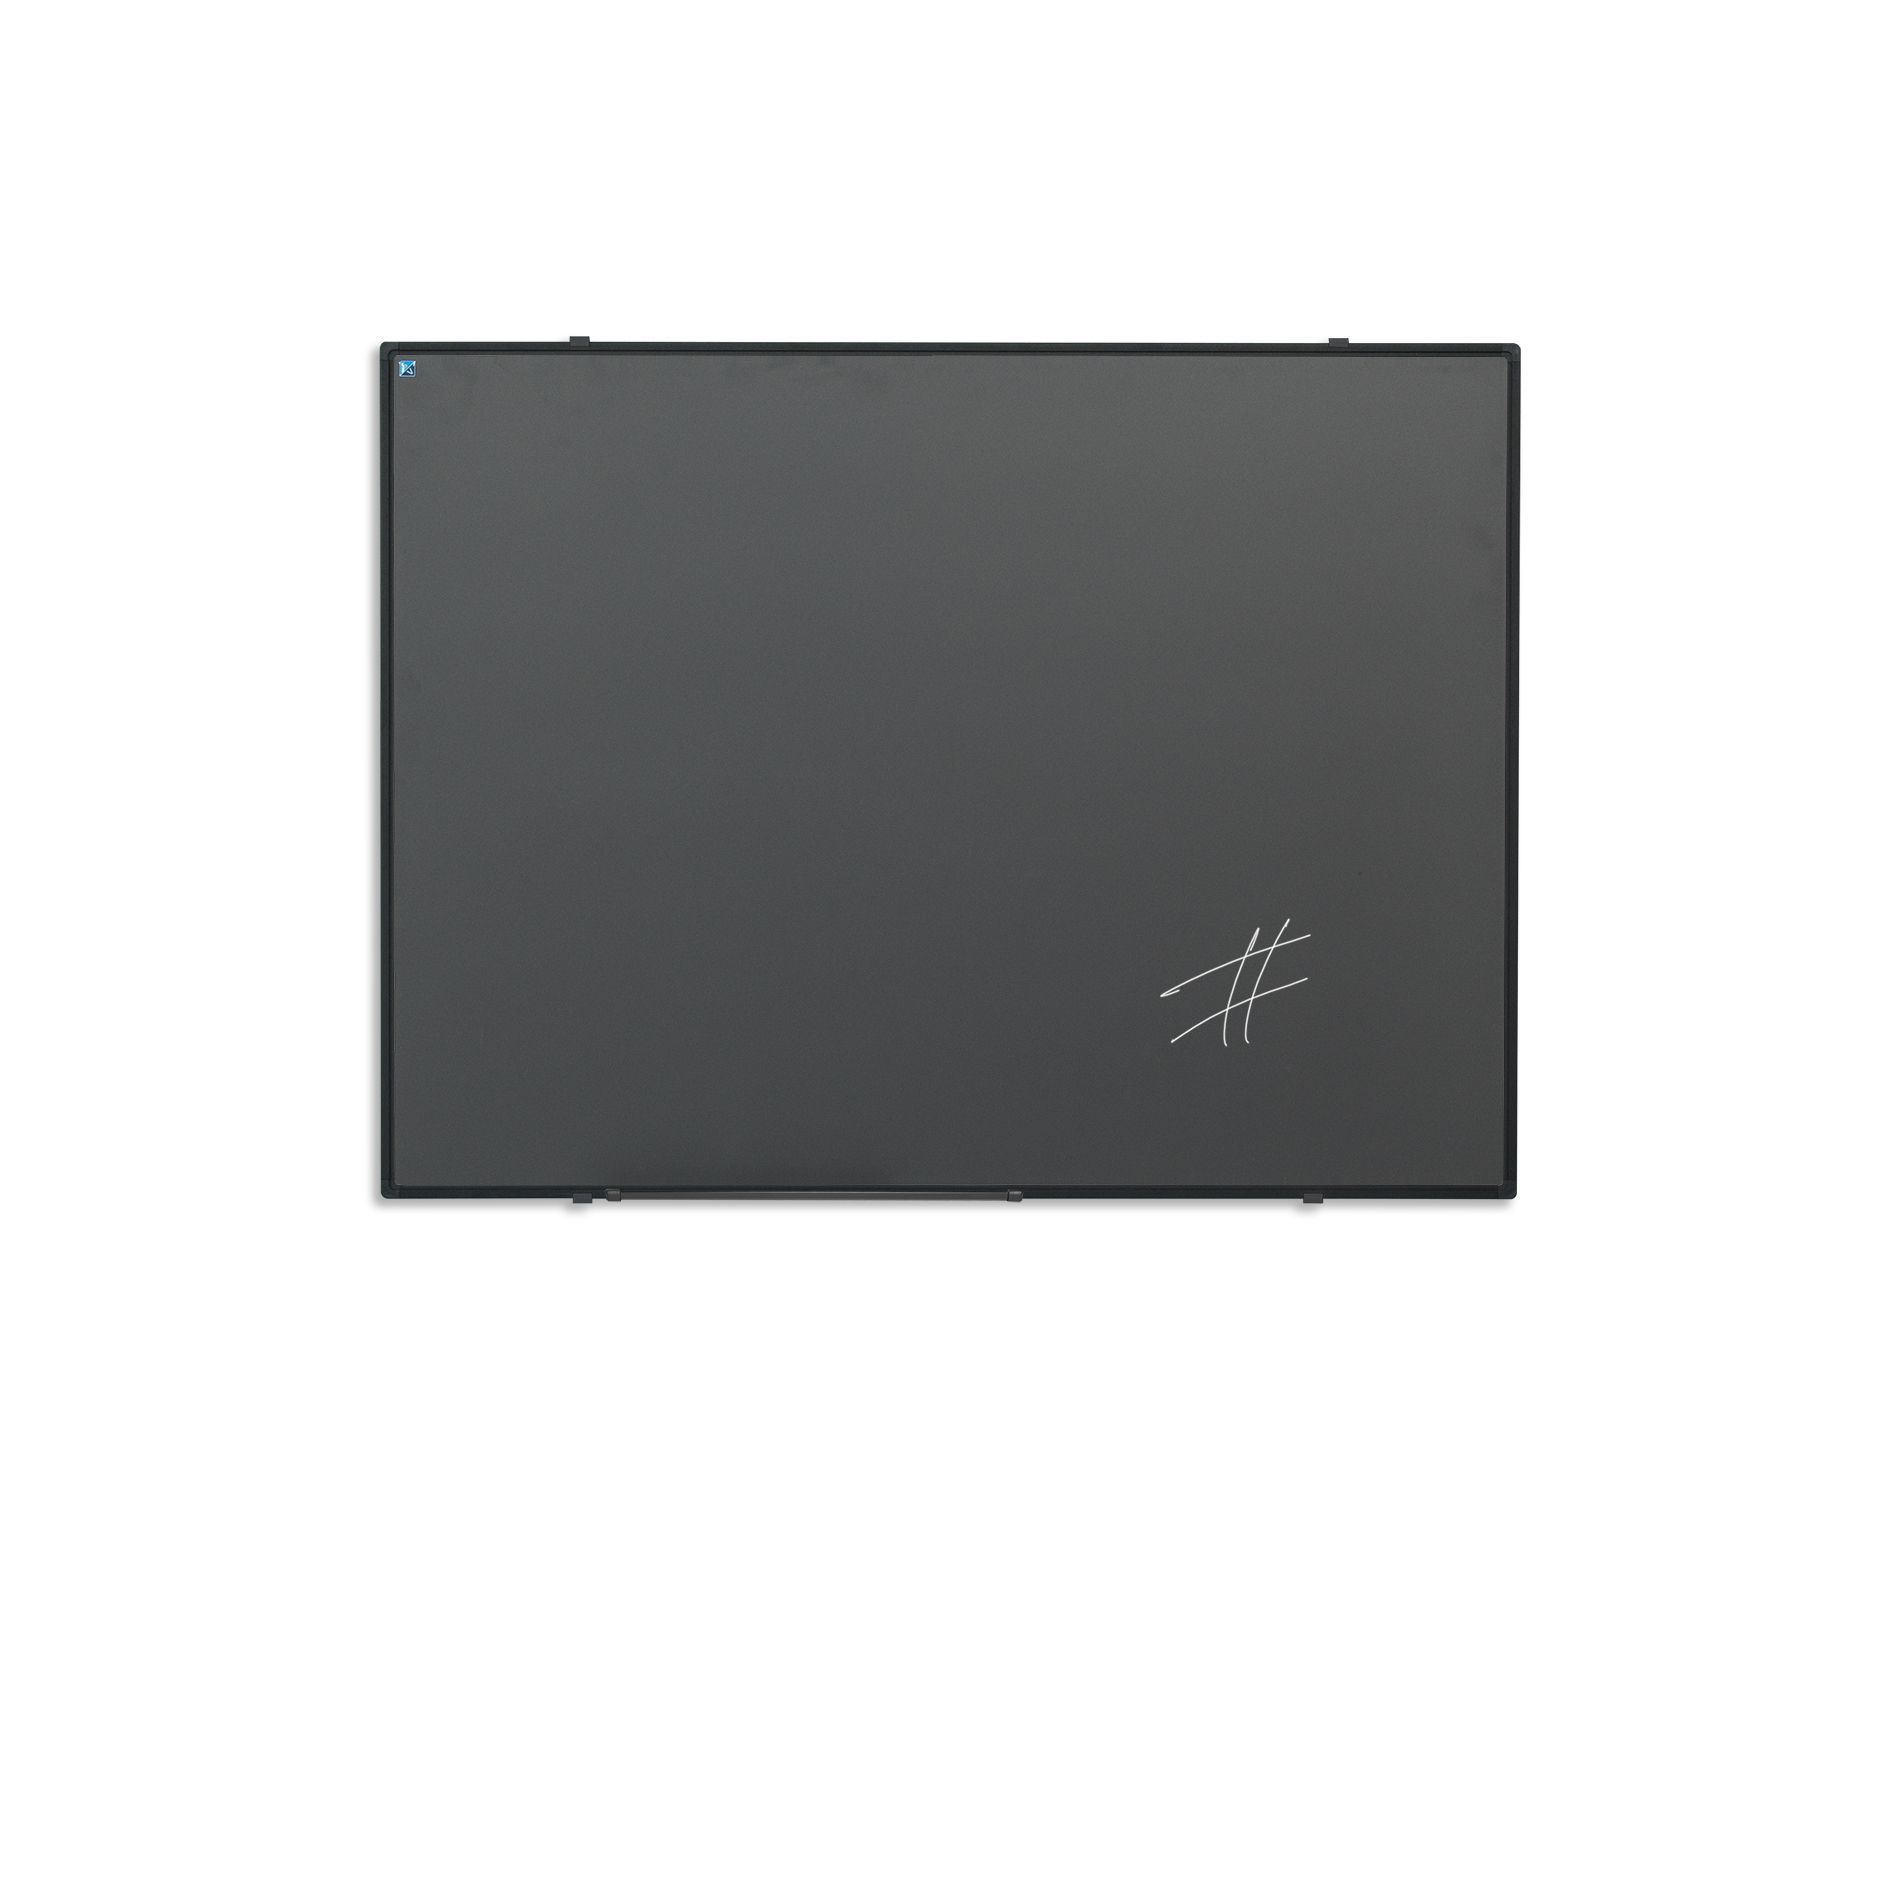 Krijtbord zwart Softline profiel 8mm, emailstaal grijs - 100x100 cm